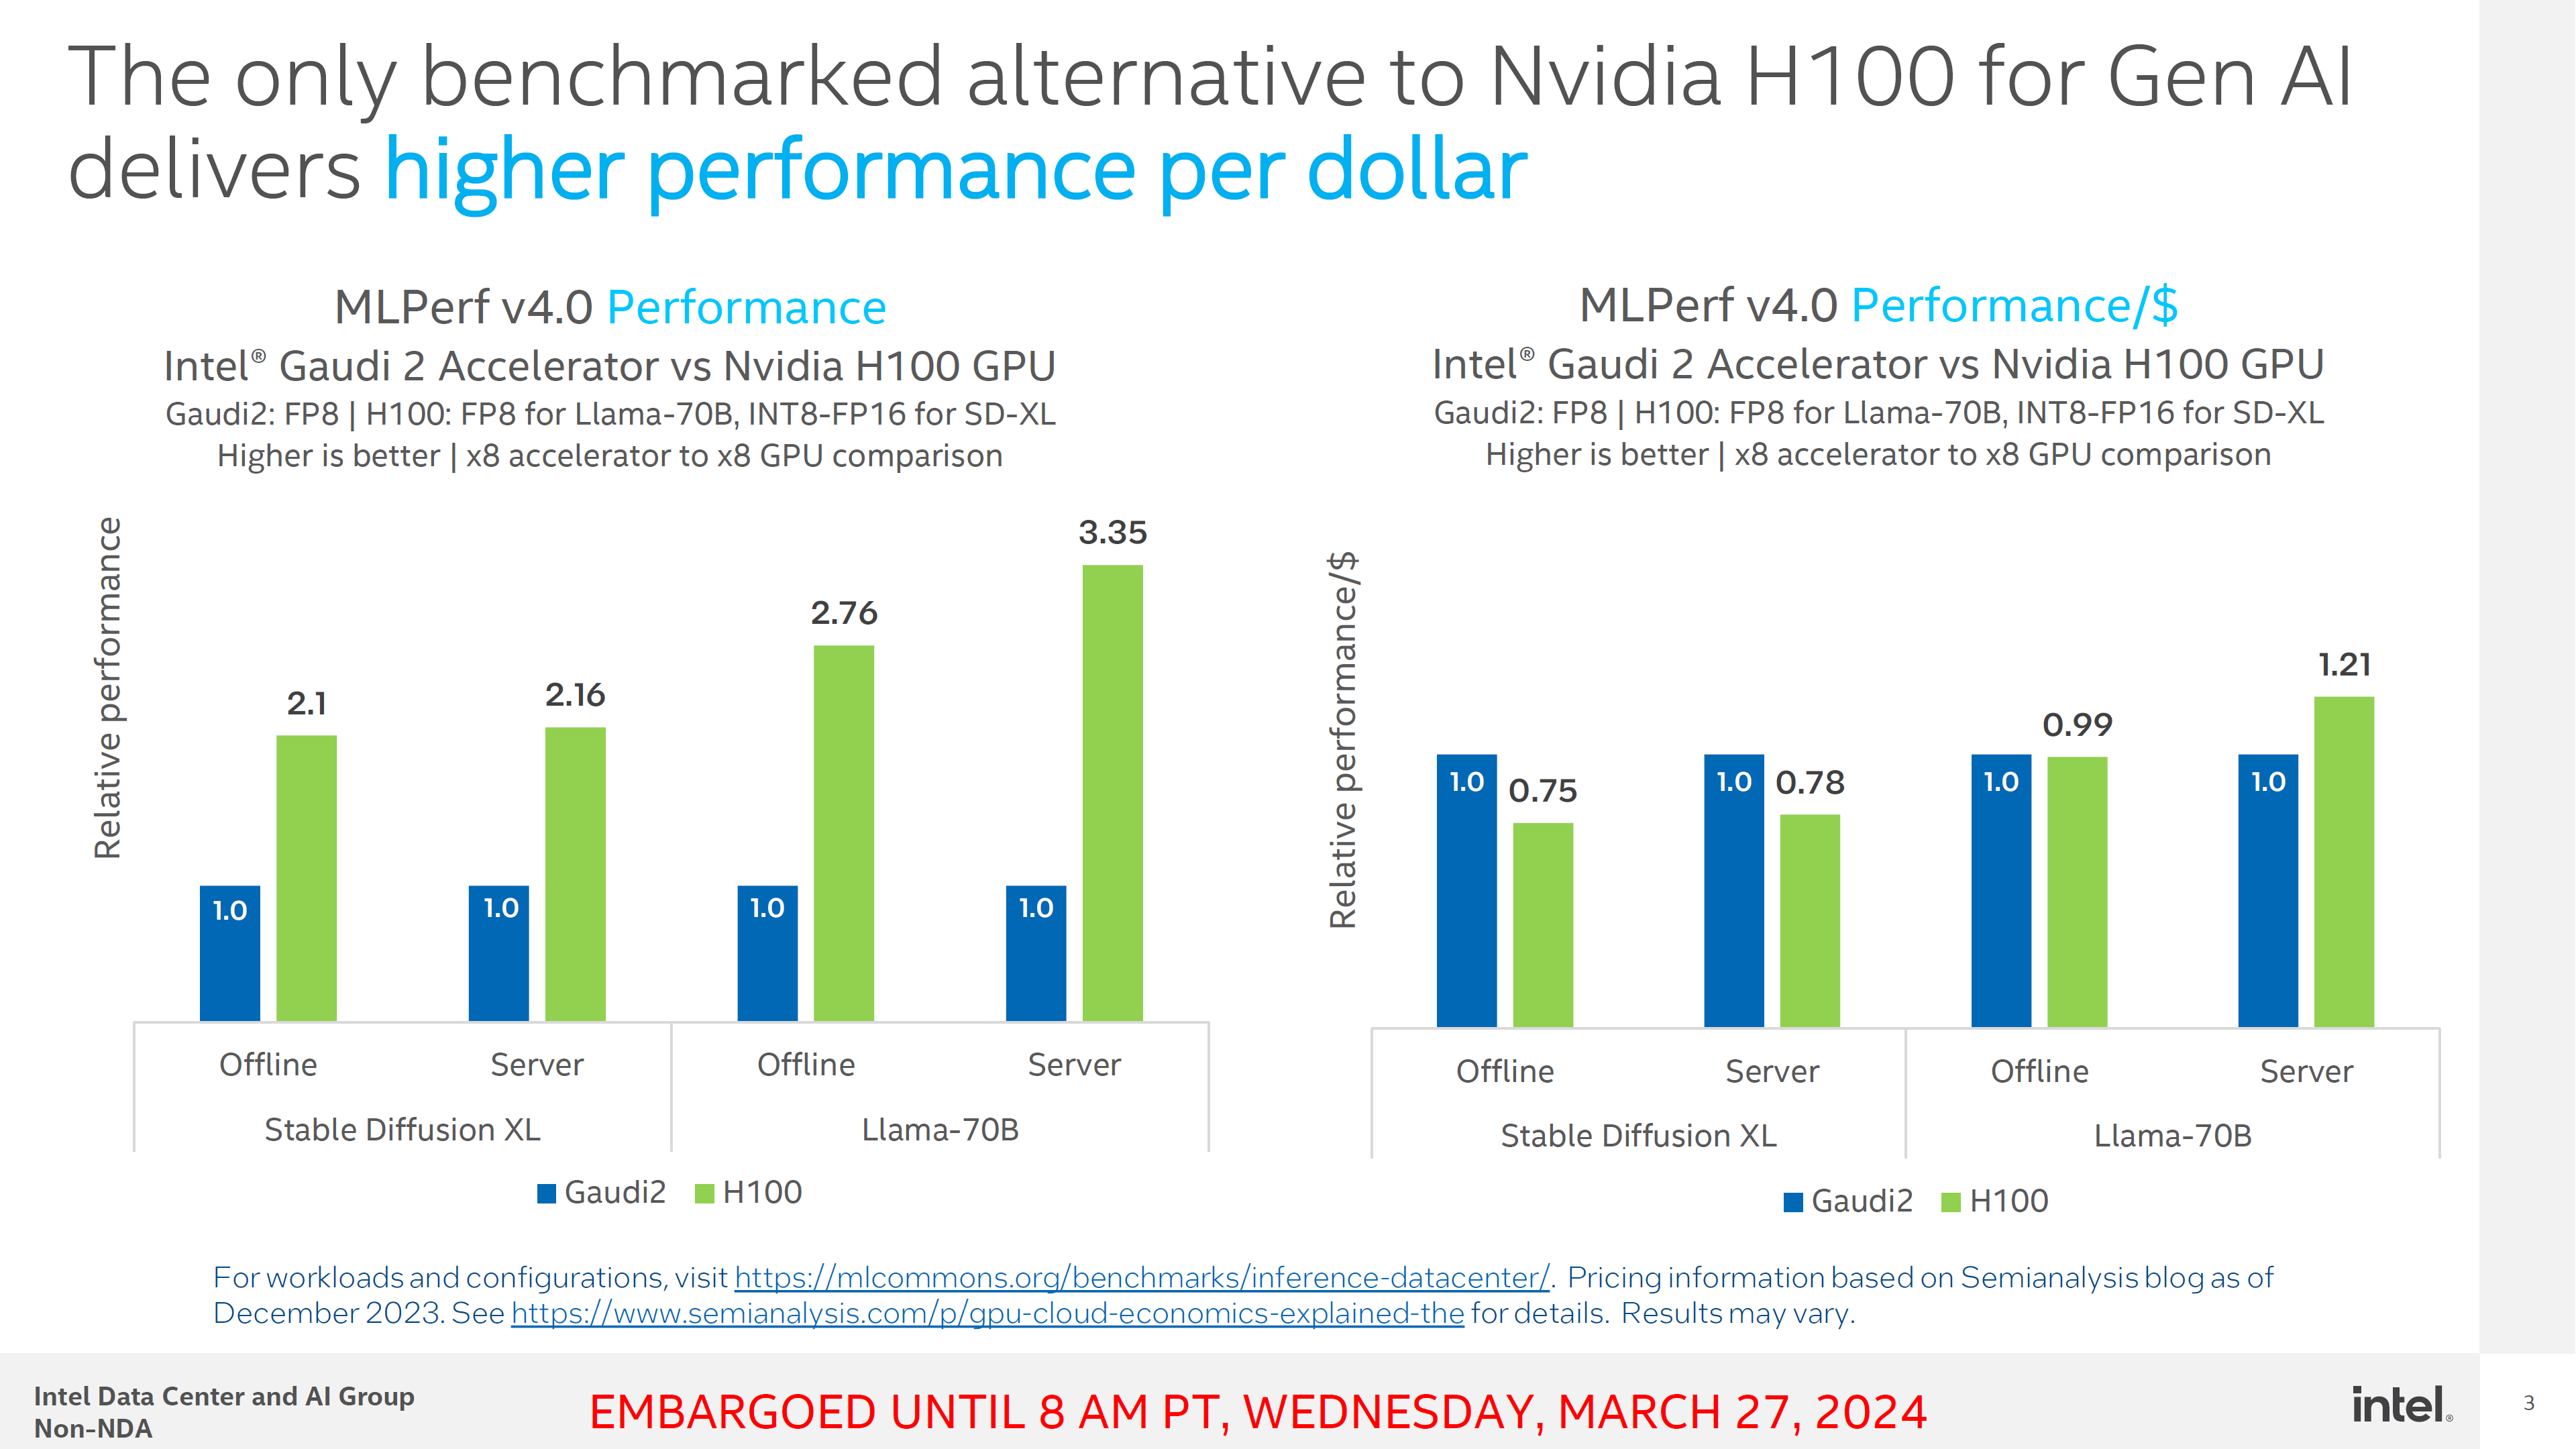 Intel Gaudi 2-Beschleuniger zeigen wettbewerbsfähige Leistung pro Dollar gegenüber NVIDIA H100 in MLPerf 4.0 GenAI Benchmarks 3